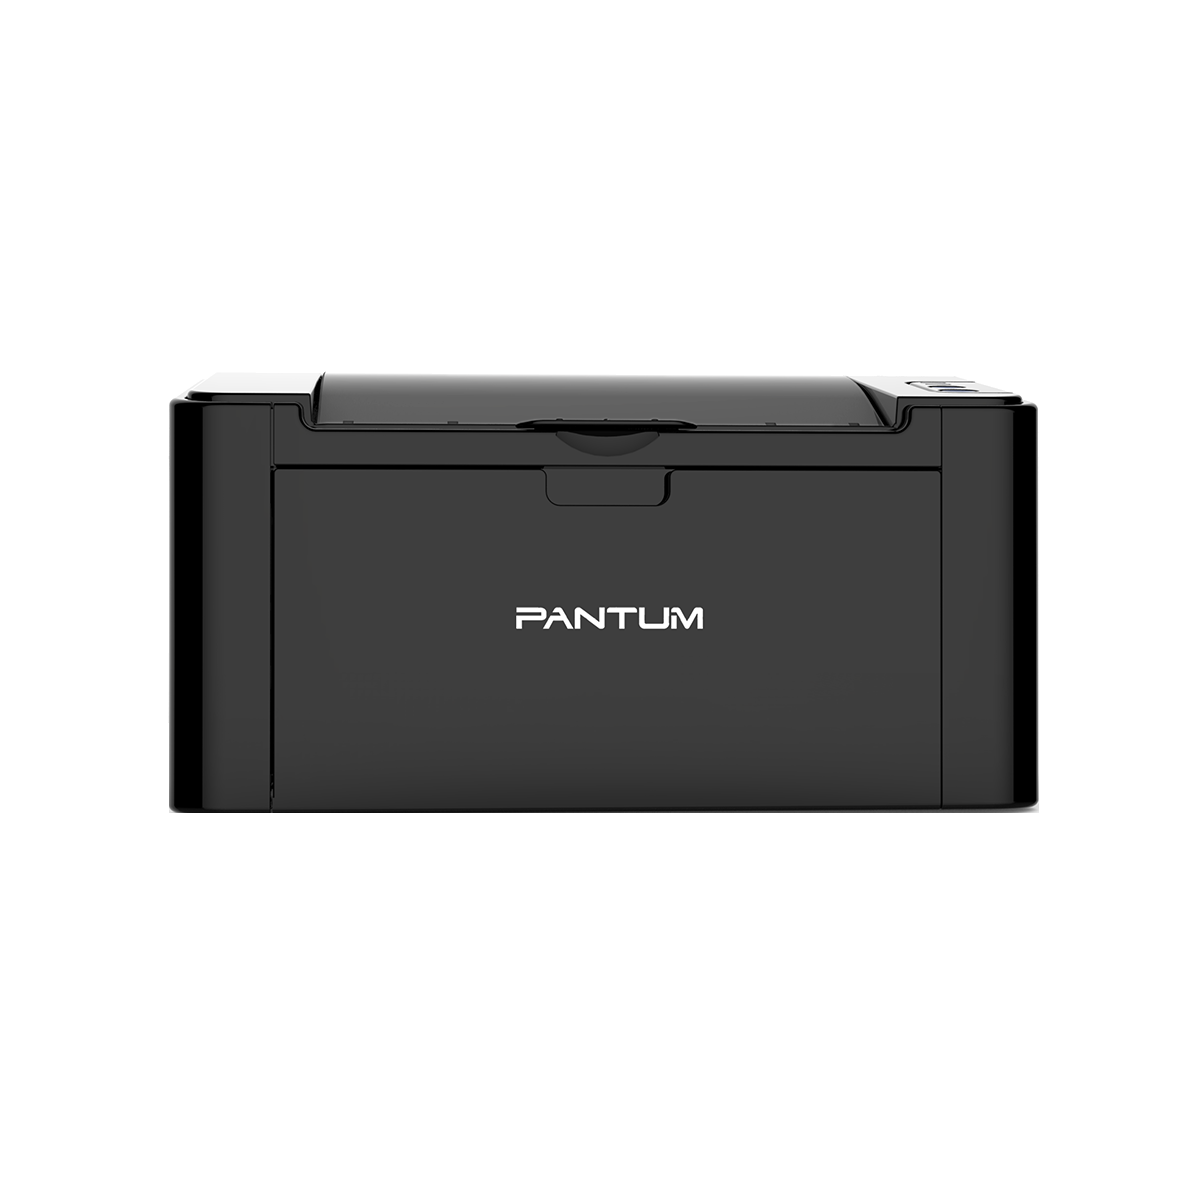 Принтер лазерный Pantum P2516, черно-белая печать, 22 стр/мин, 600x600 dpi, 32Мб RAM, USB